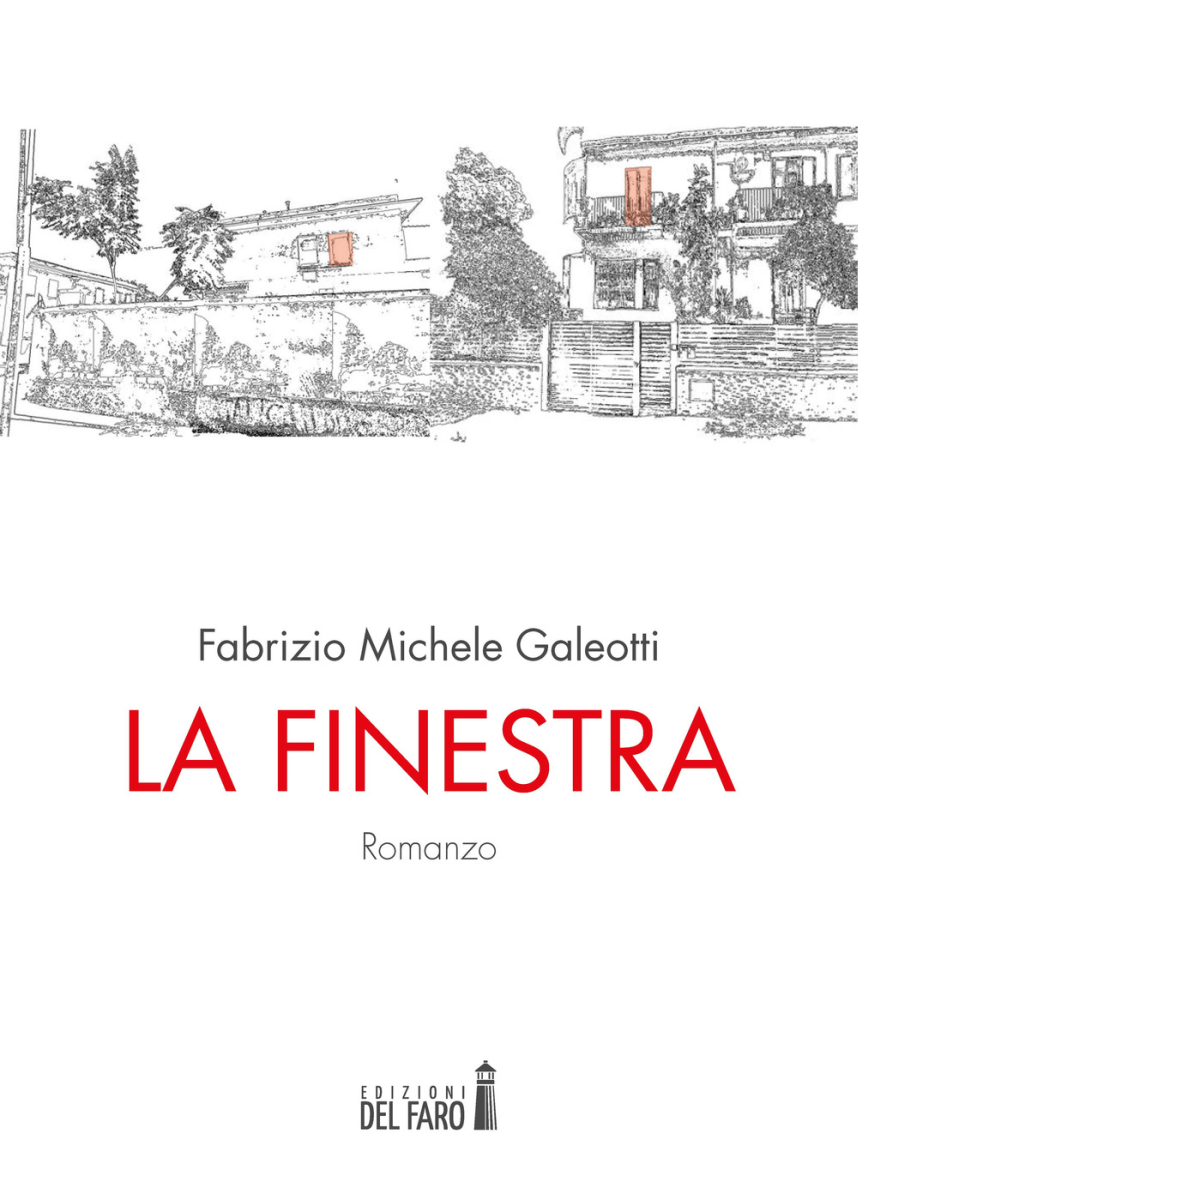  La finestra di Galeotti Fabrizio Michele - Edizioni Del faro, 2017